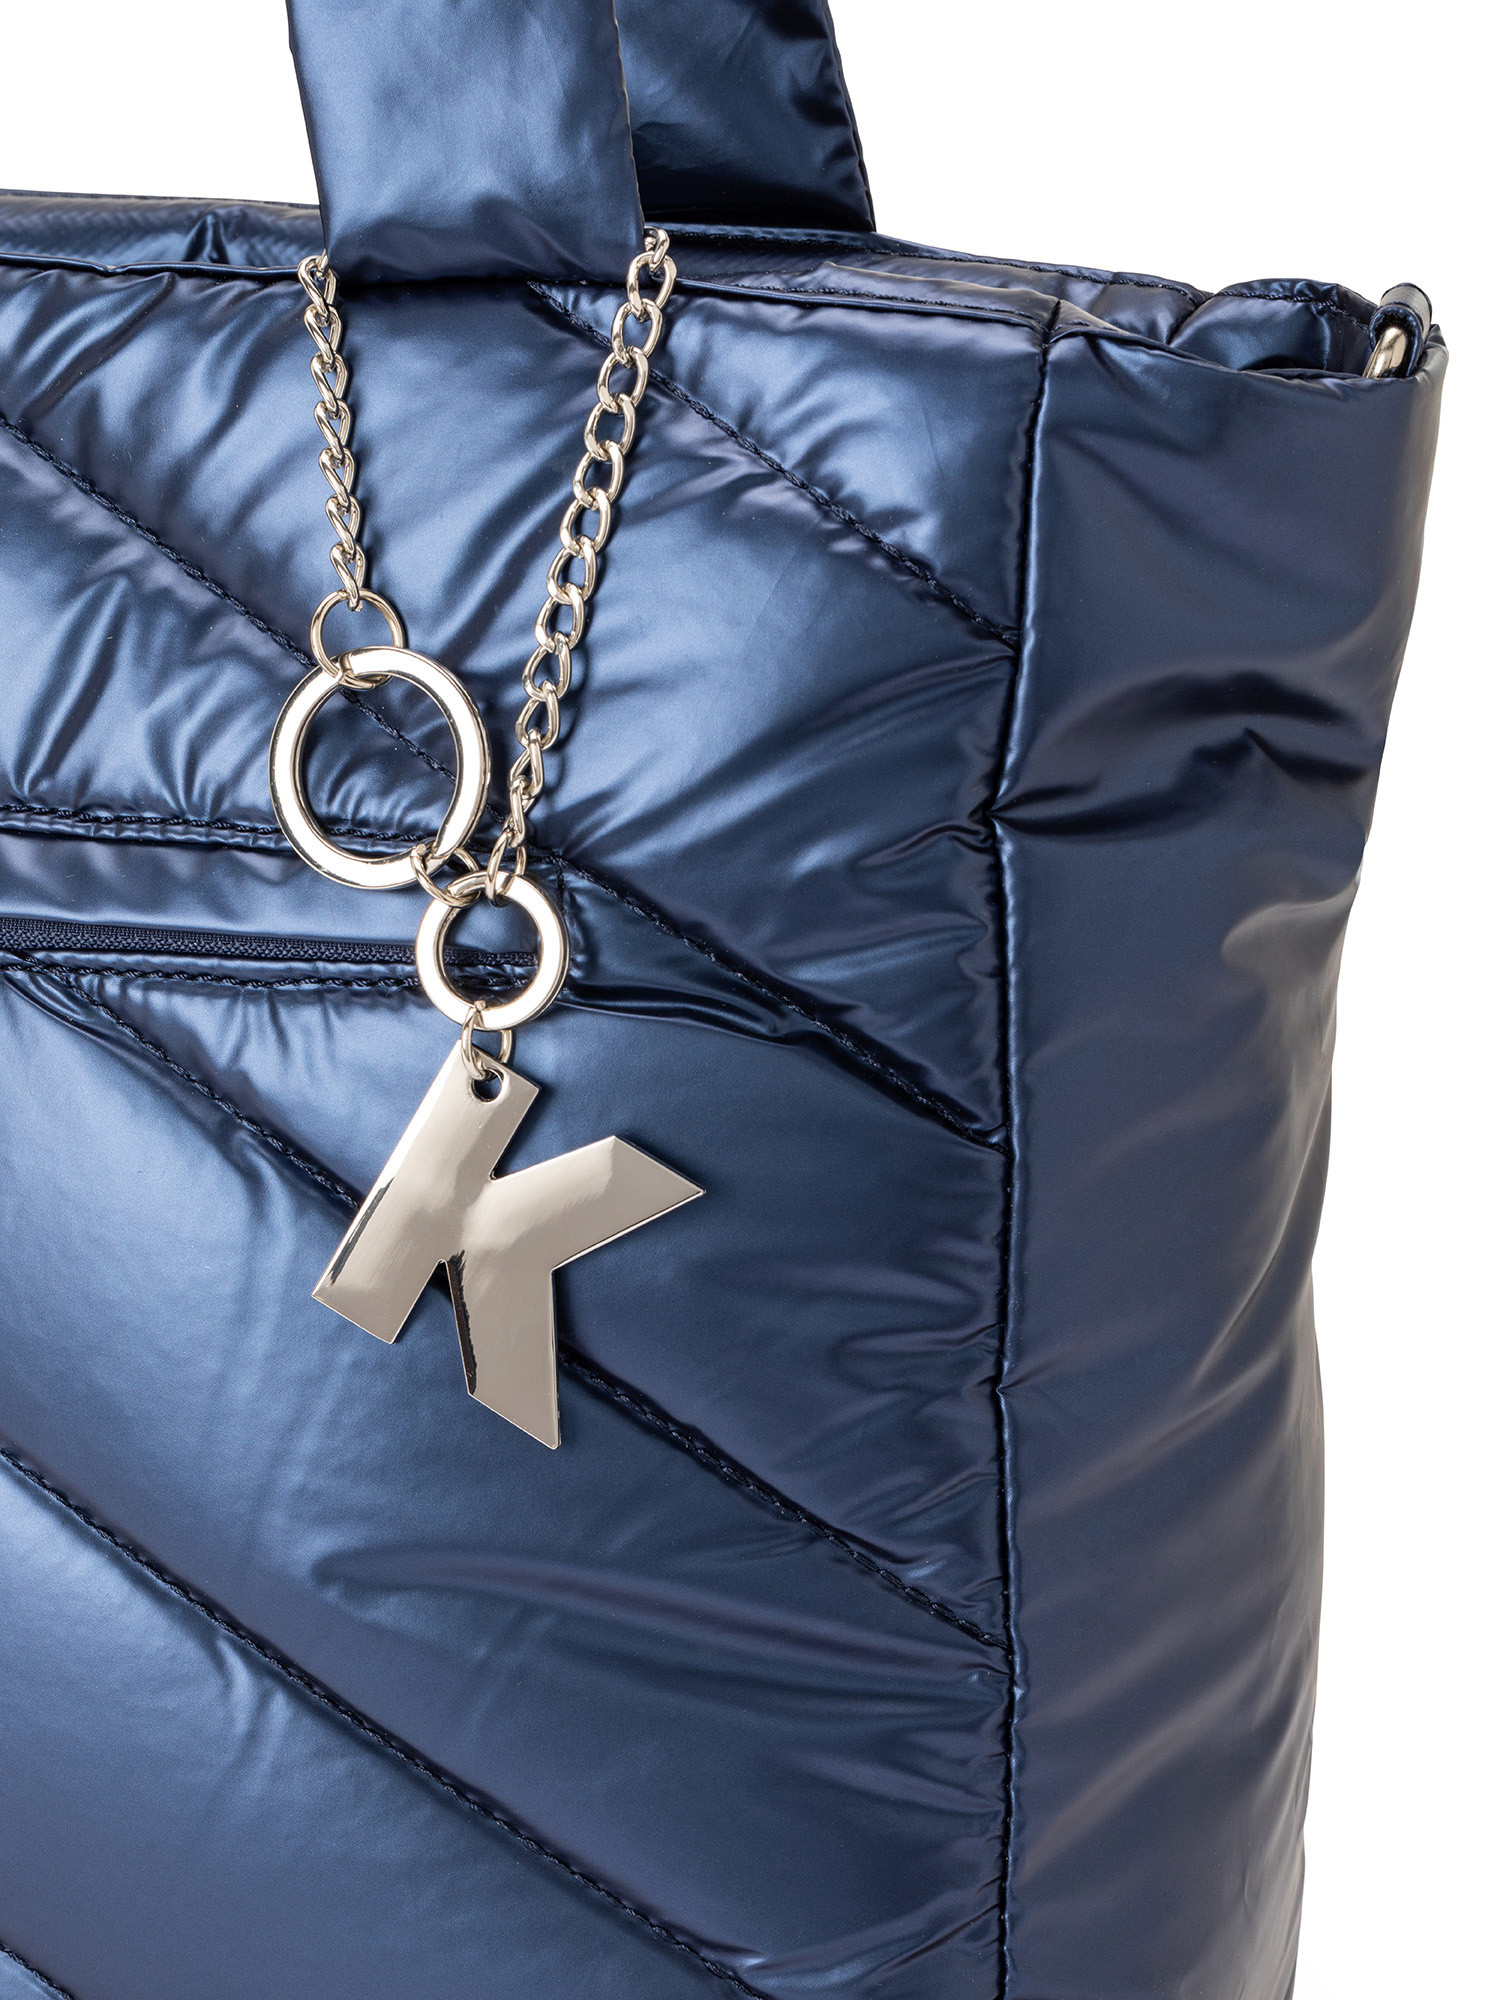 Koan - Shopping bag in nylon, Blu, large image number 2